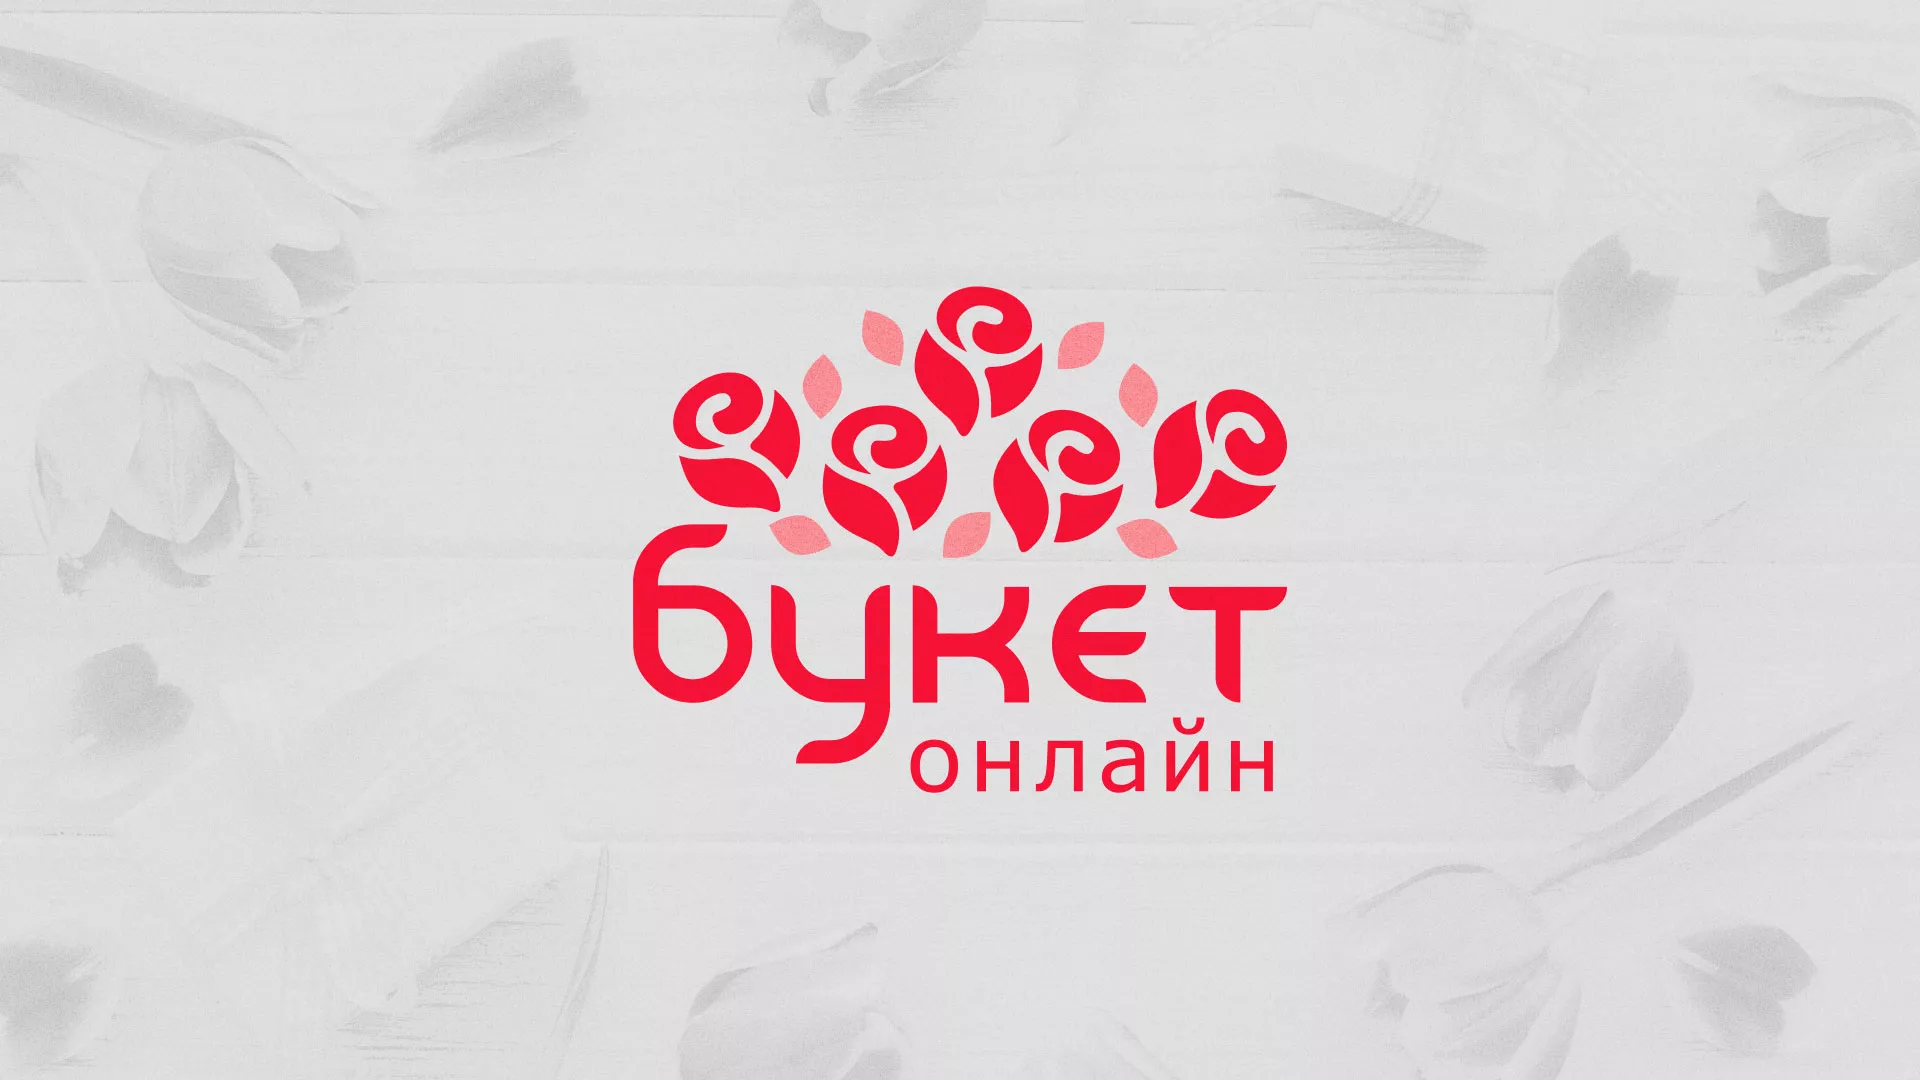 Создание интернет-магазина «Букет-онлайн» по цветам в Гвардейске